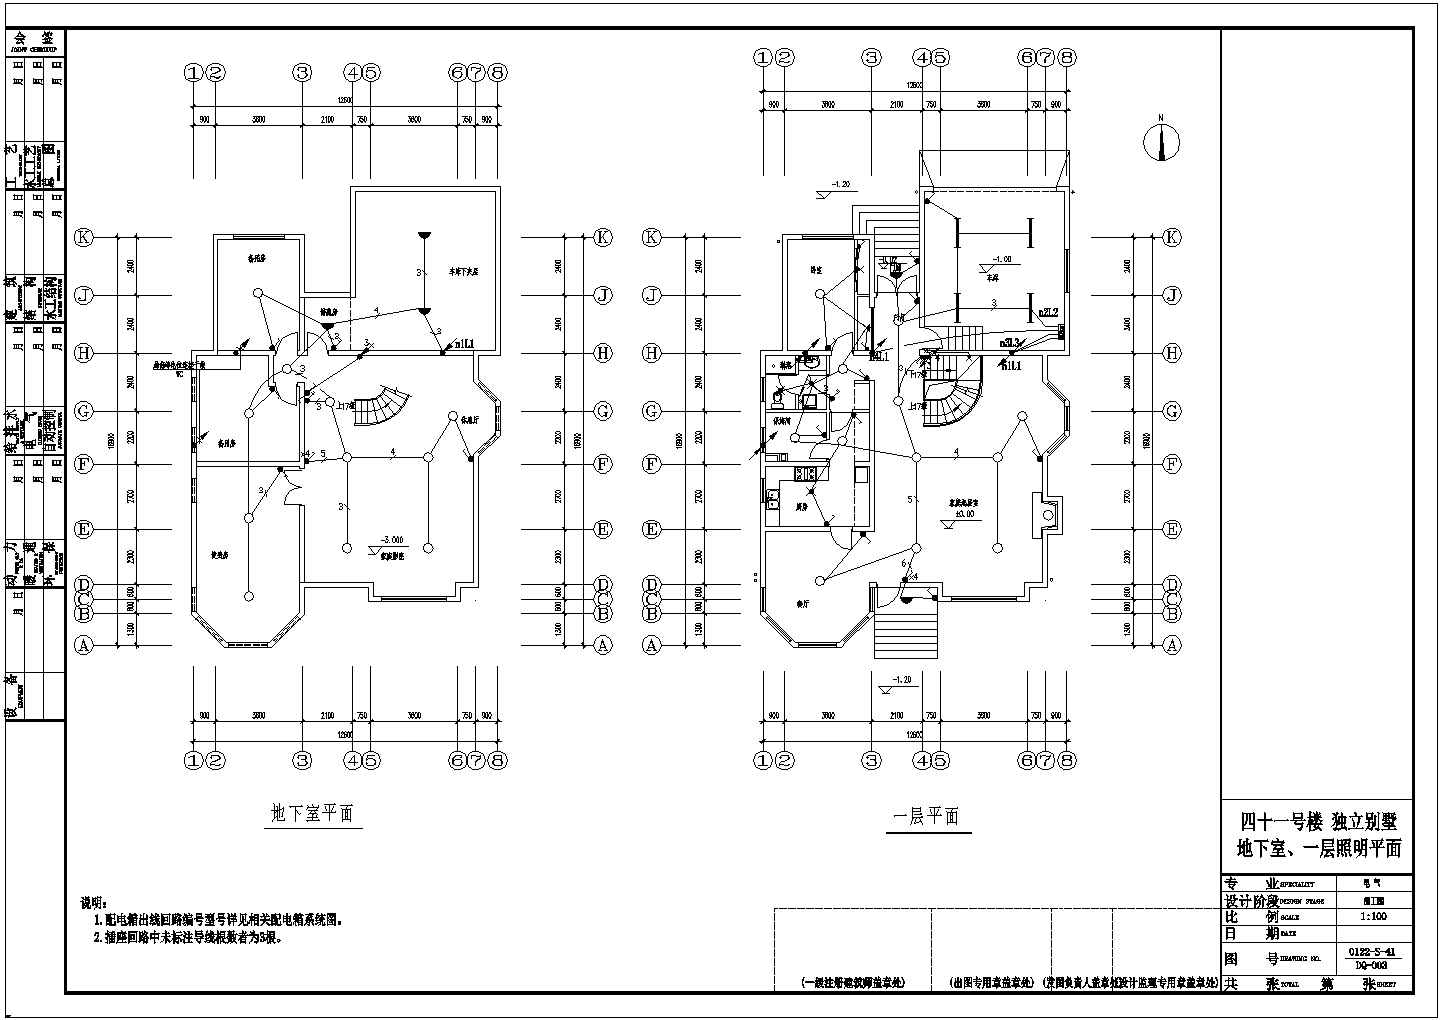 某3层附地下室独立别墅CAD详细框架结构设计图纸(完整版)